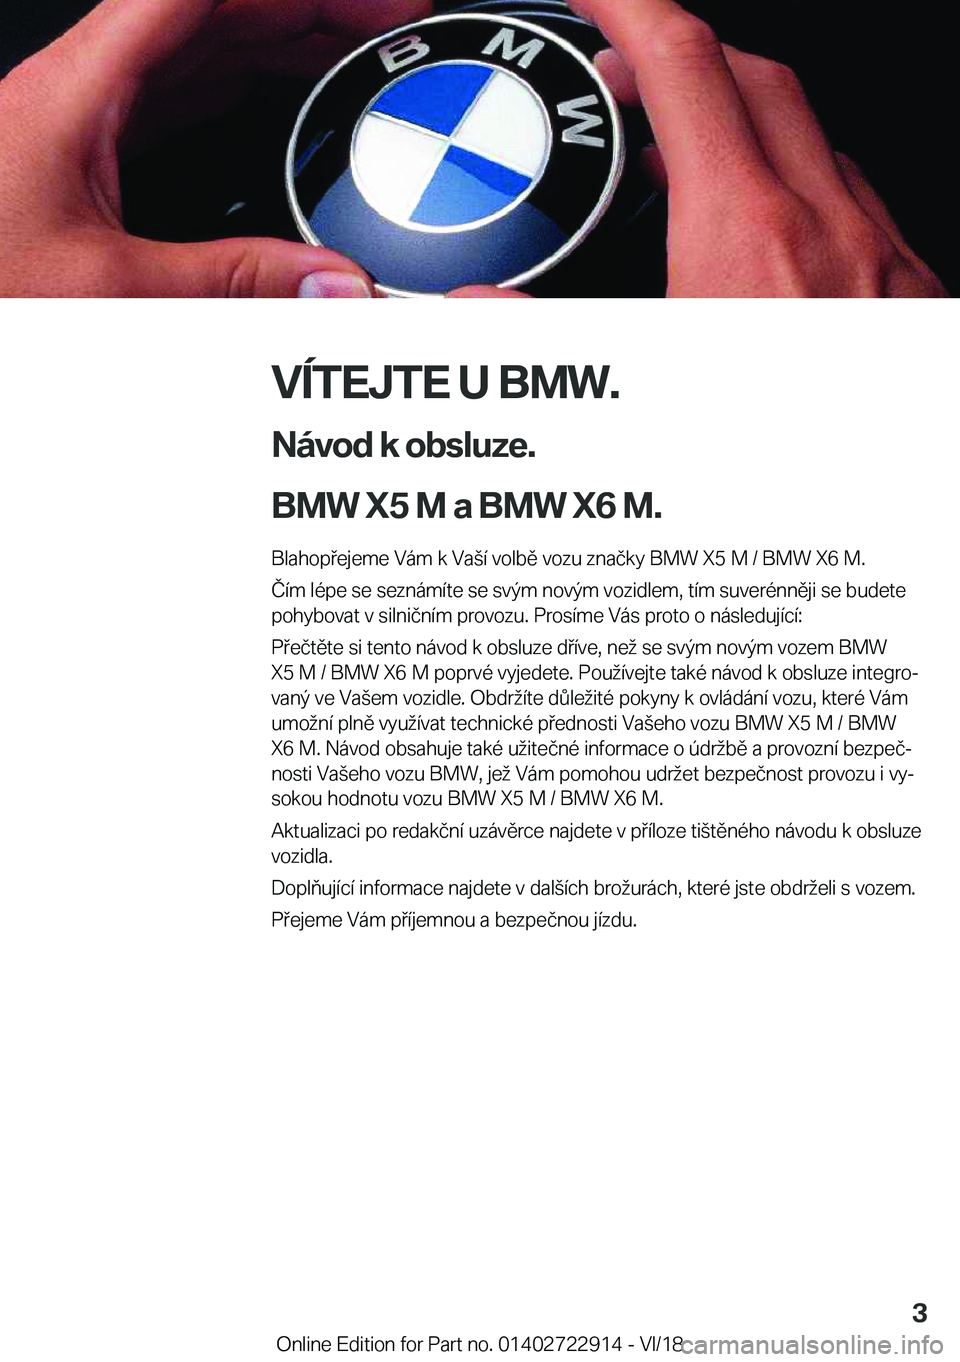 BMW X6 M 2019  Návod na použití (in Czech) �V�